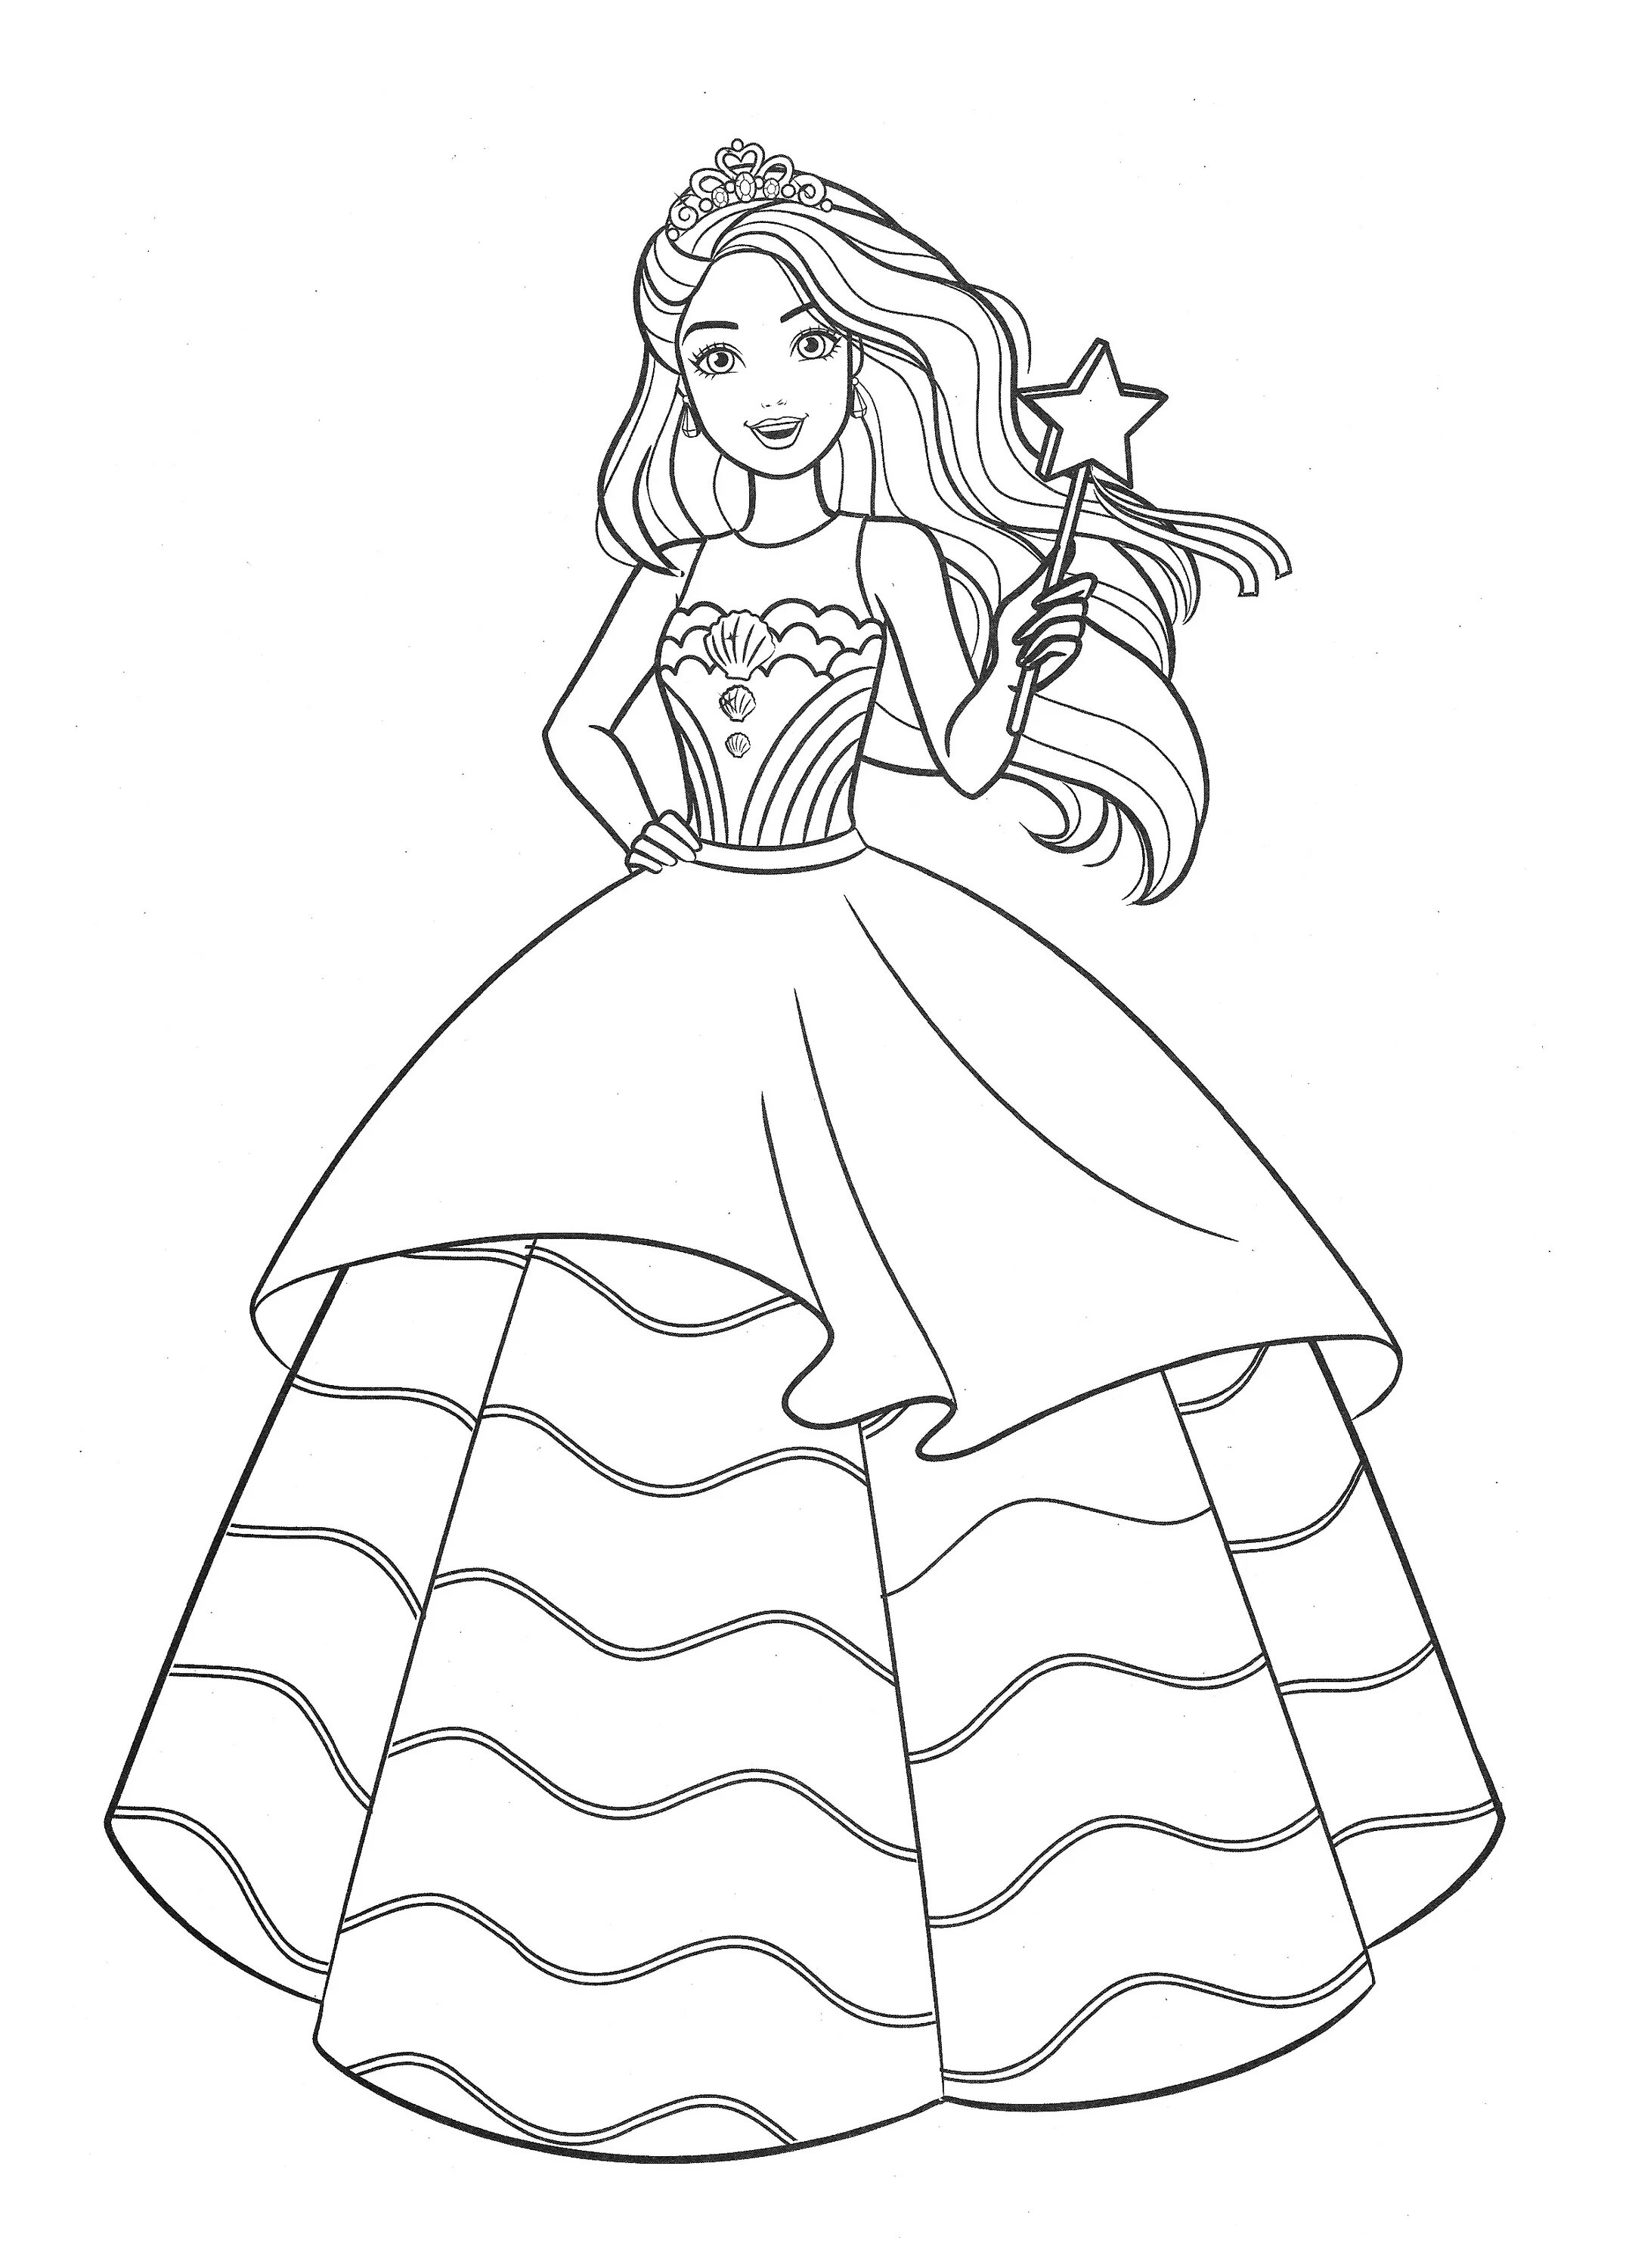 Раскраски Раскраска Барби в платье принцессы Платья, скачать распечатать раскраски.